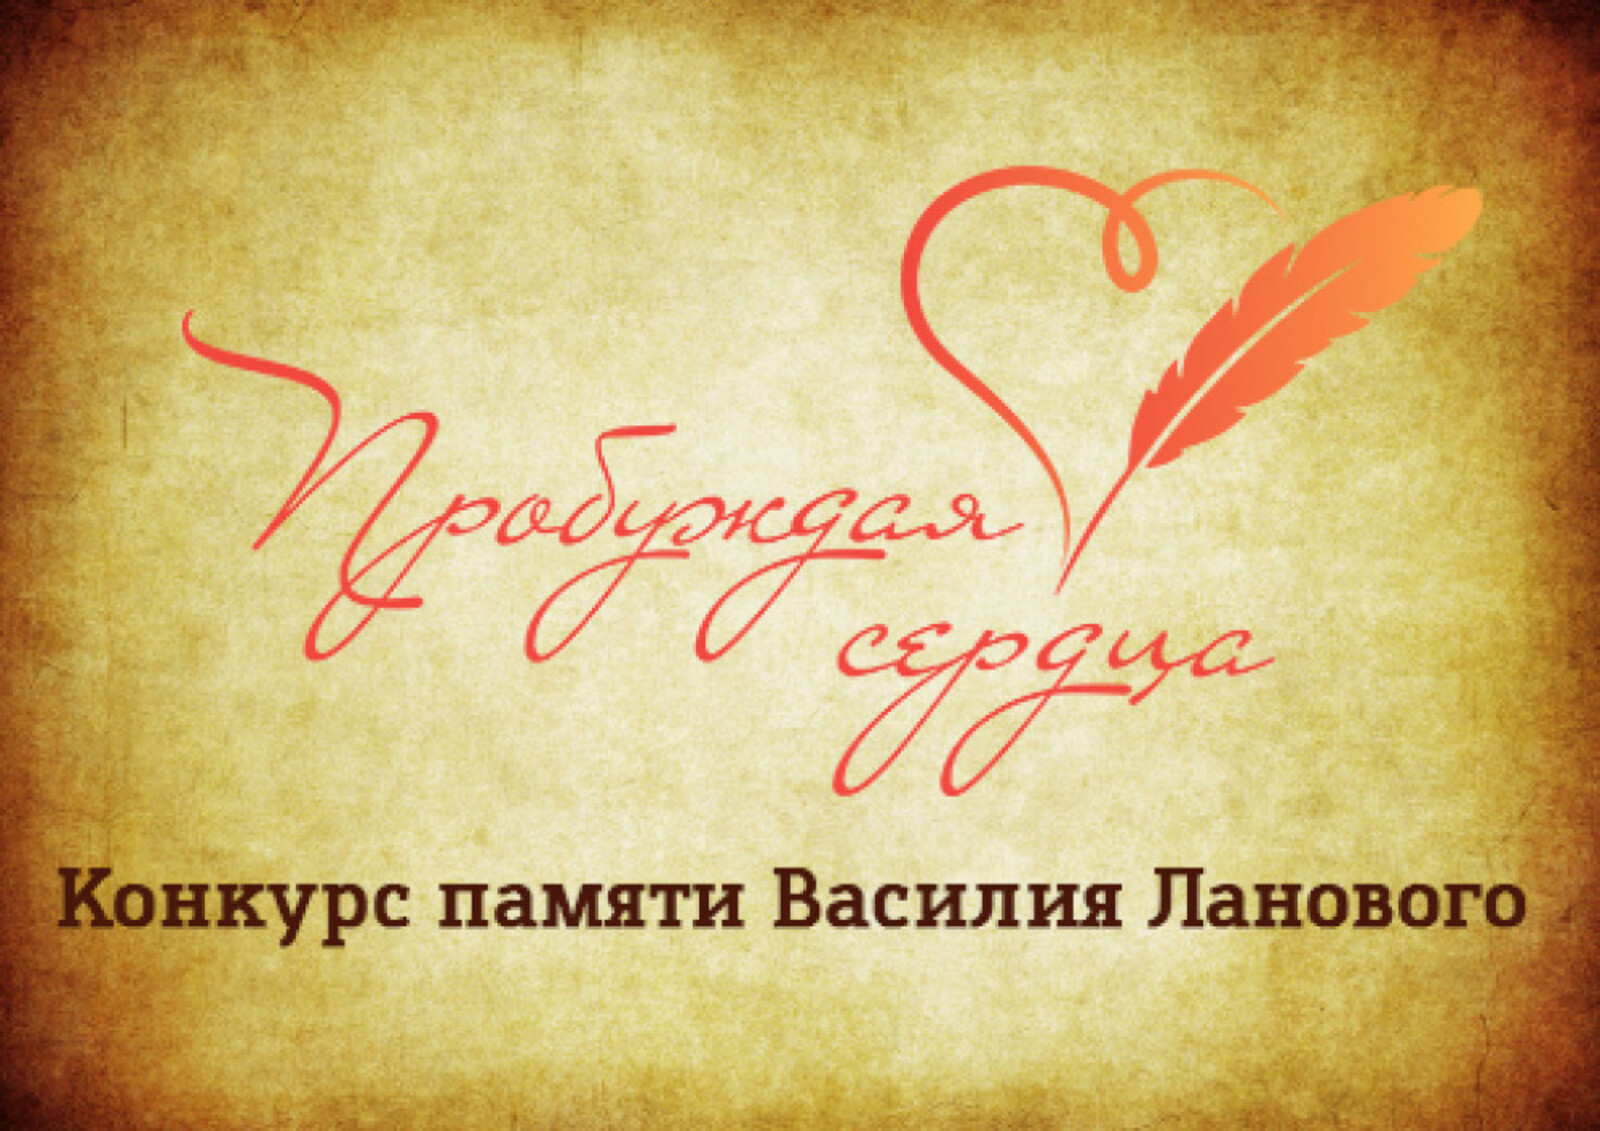 Принимаются заявки для участия в конкурсе, посвящённом юбилею Василия Ланового